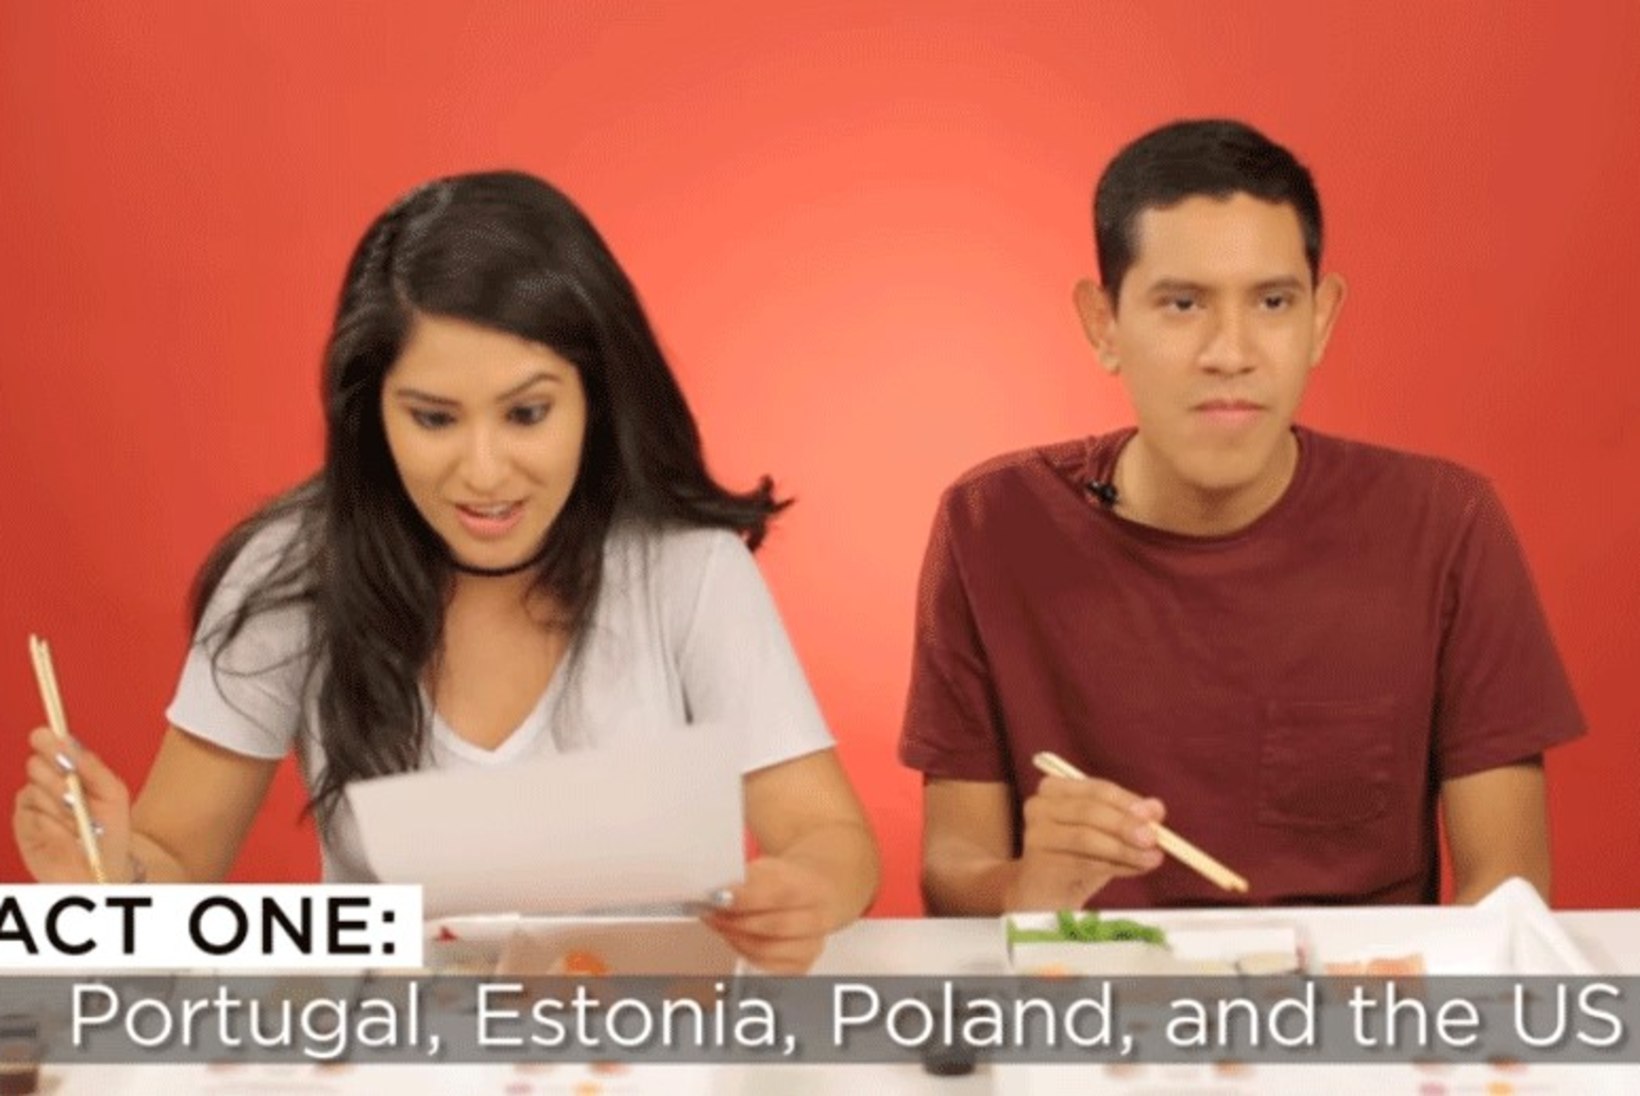 VIDEO | Uudis lõhe väljasuremisohust Eestis viis BuzzFeedi katsejänestelt sushiisu